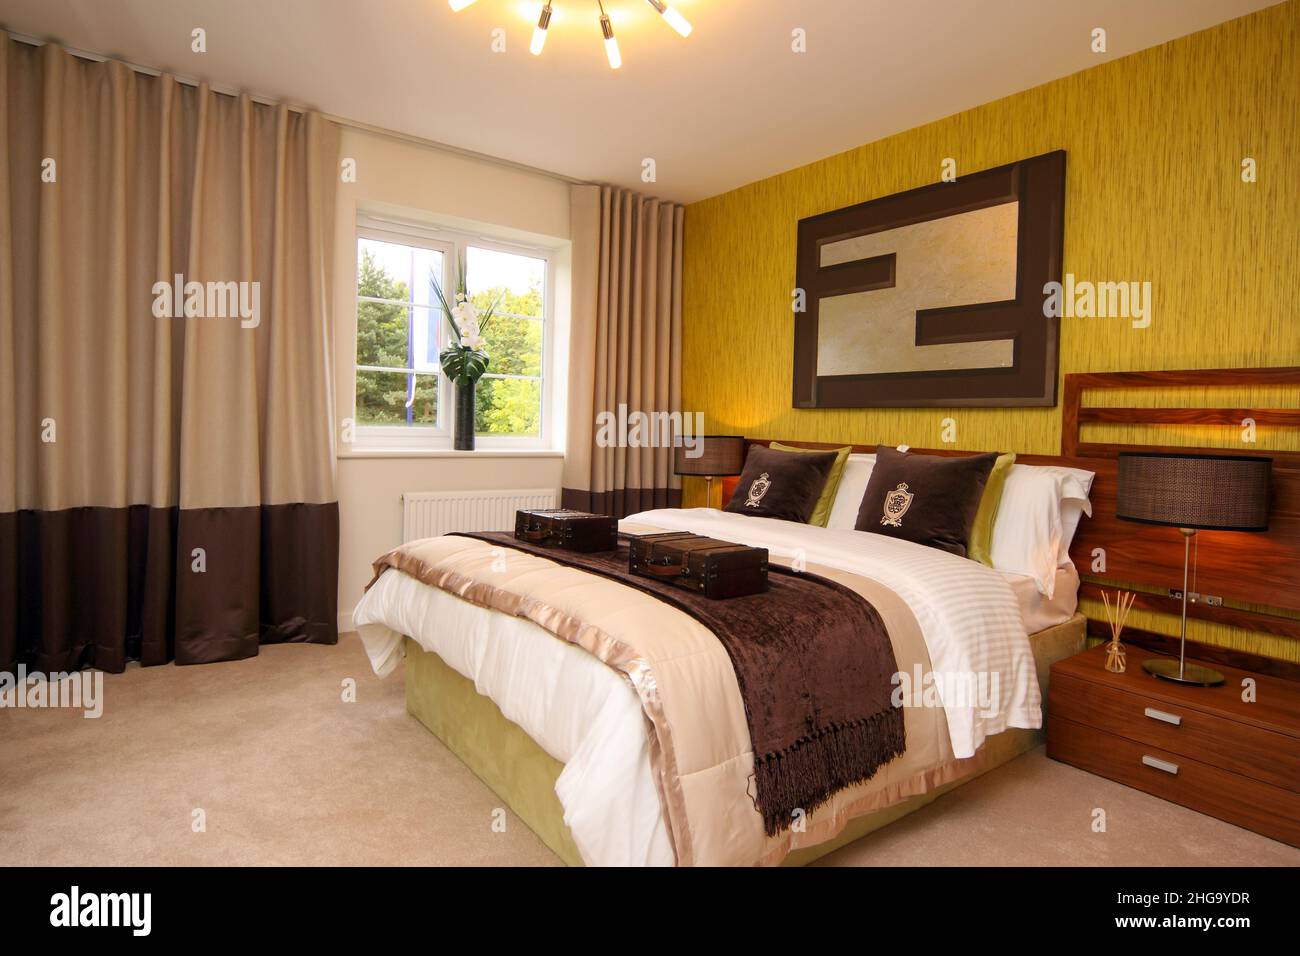 Fondo de pared amarillo dorado en un dormitorio, estilo de vida, cojines, cama doble king size, luces de cabecera, espejo de pared, flores en la ventana. Foto de stock